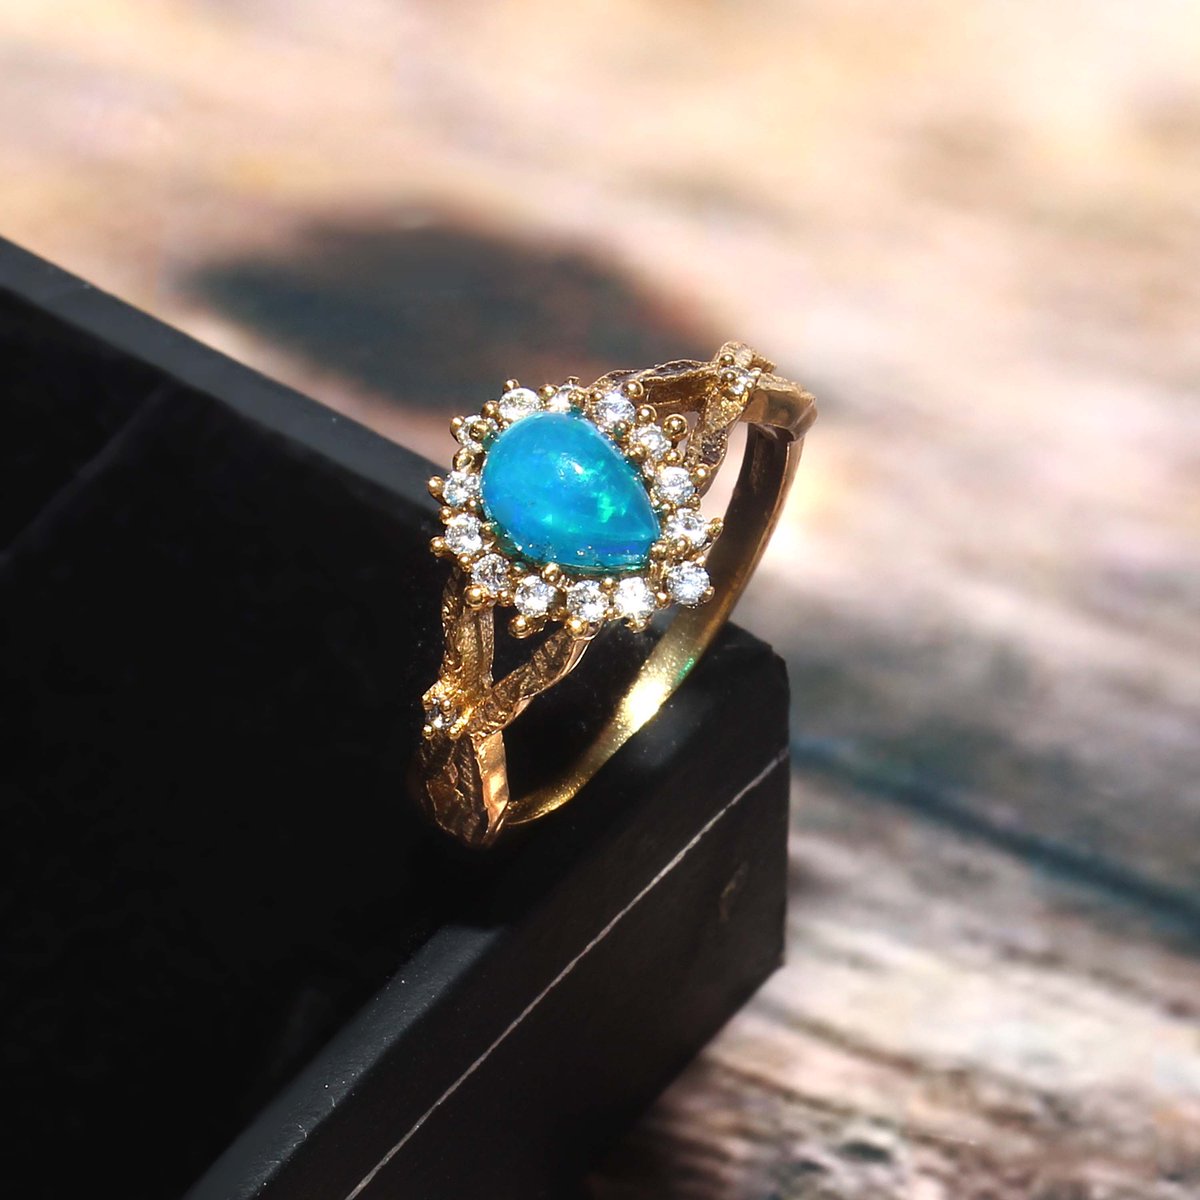 #Jewelldiro #OpalRing #SterlingSilver #GoldPlated #OnlineShopping #opalring #opal #opaljewelry #opalstone #opalpendant #opals #blackopal #opaljewellery #gems #opalnecklace #opalcabochon #gemstones #weloopal #australianopal #opalicious #jewelry #opalrings #opallove #fireopal